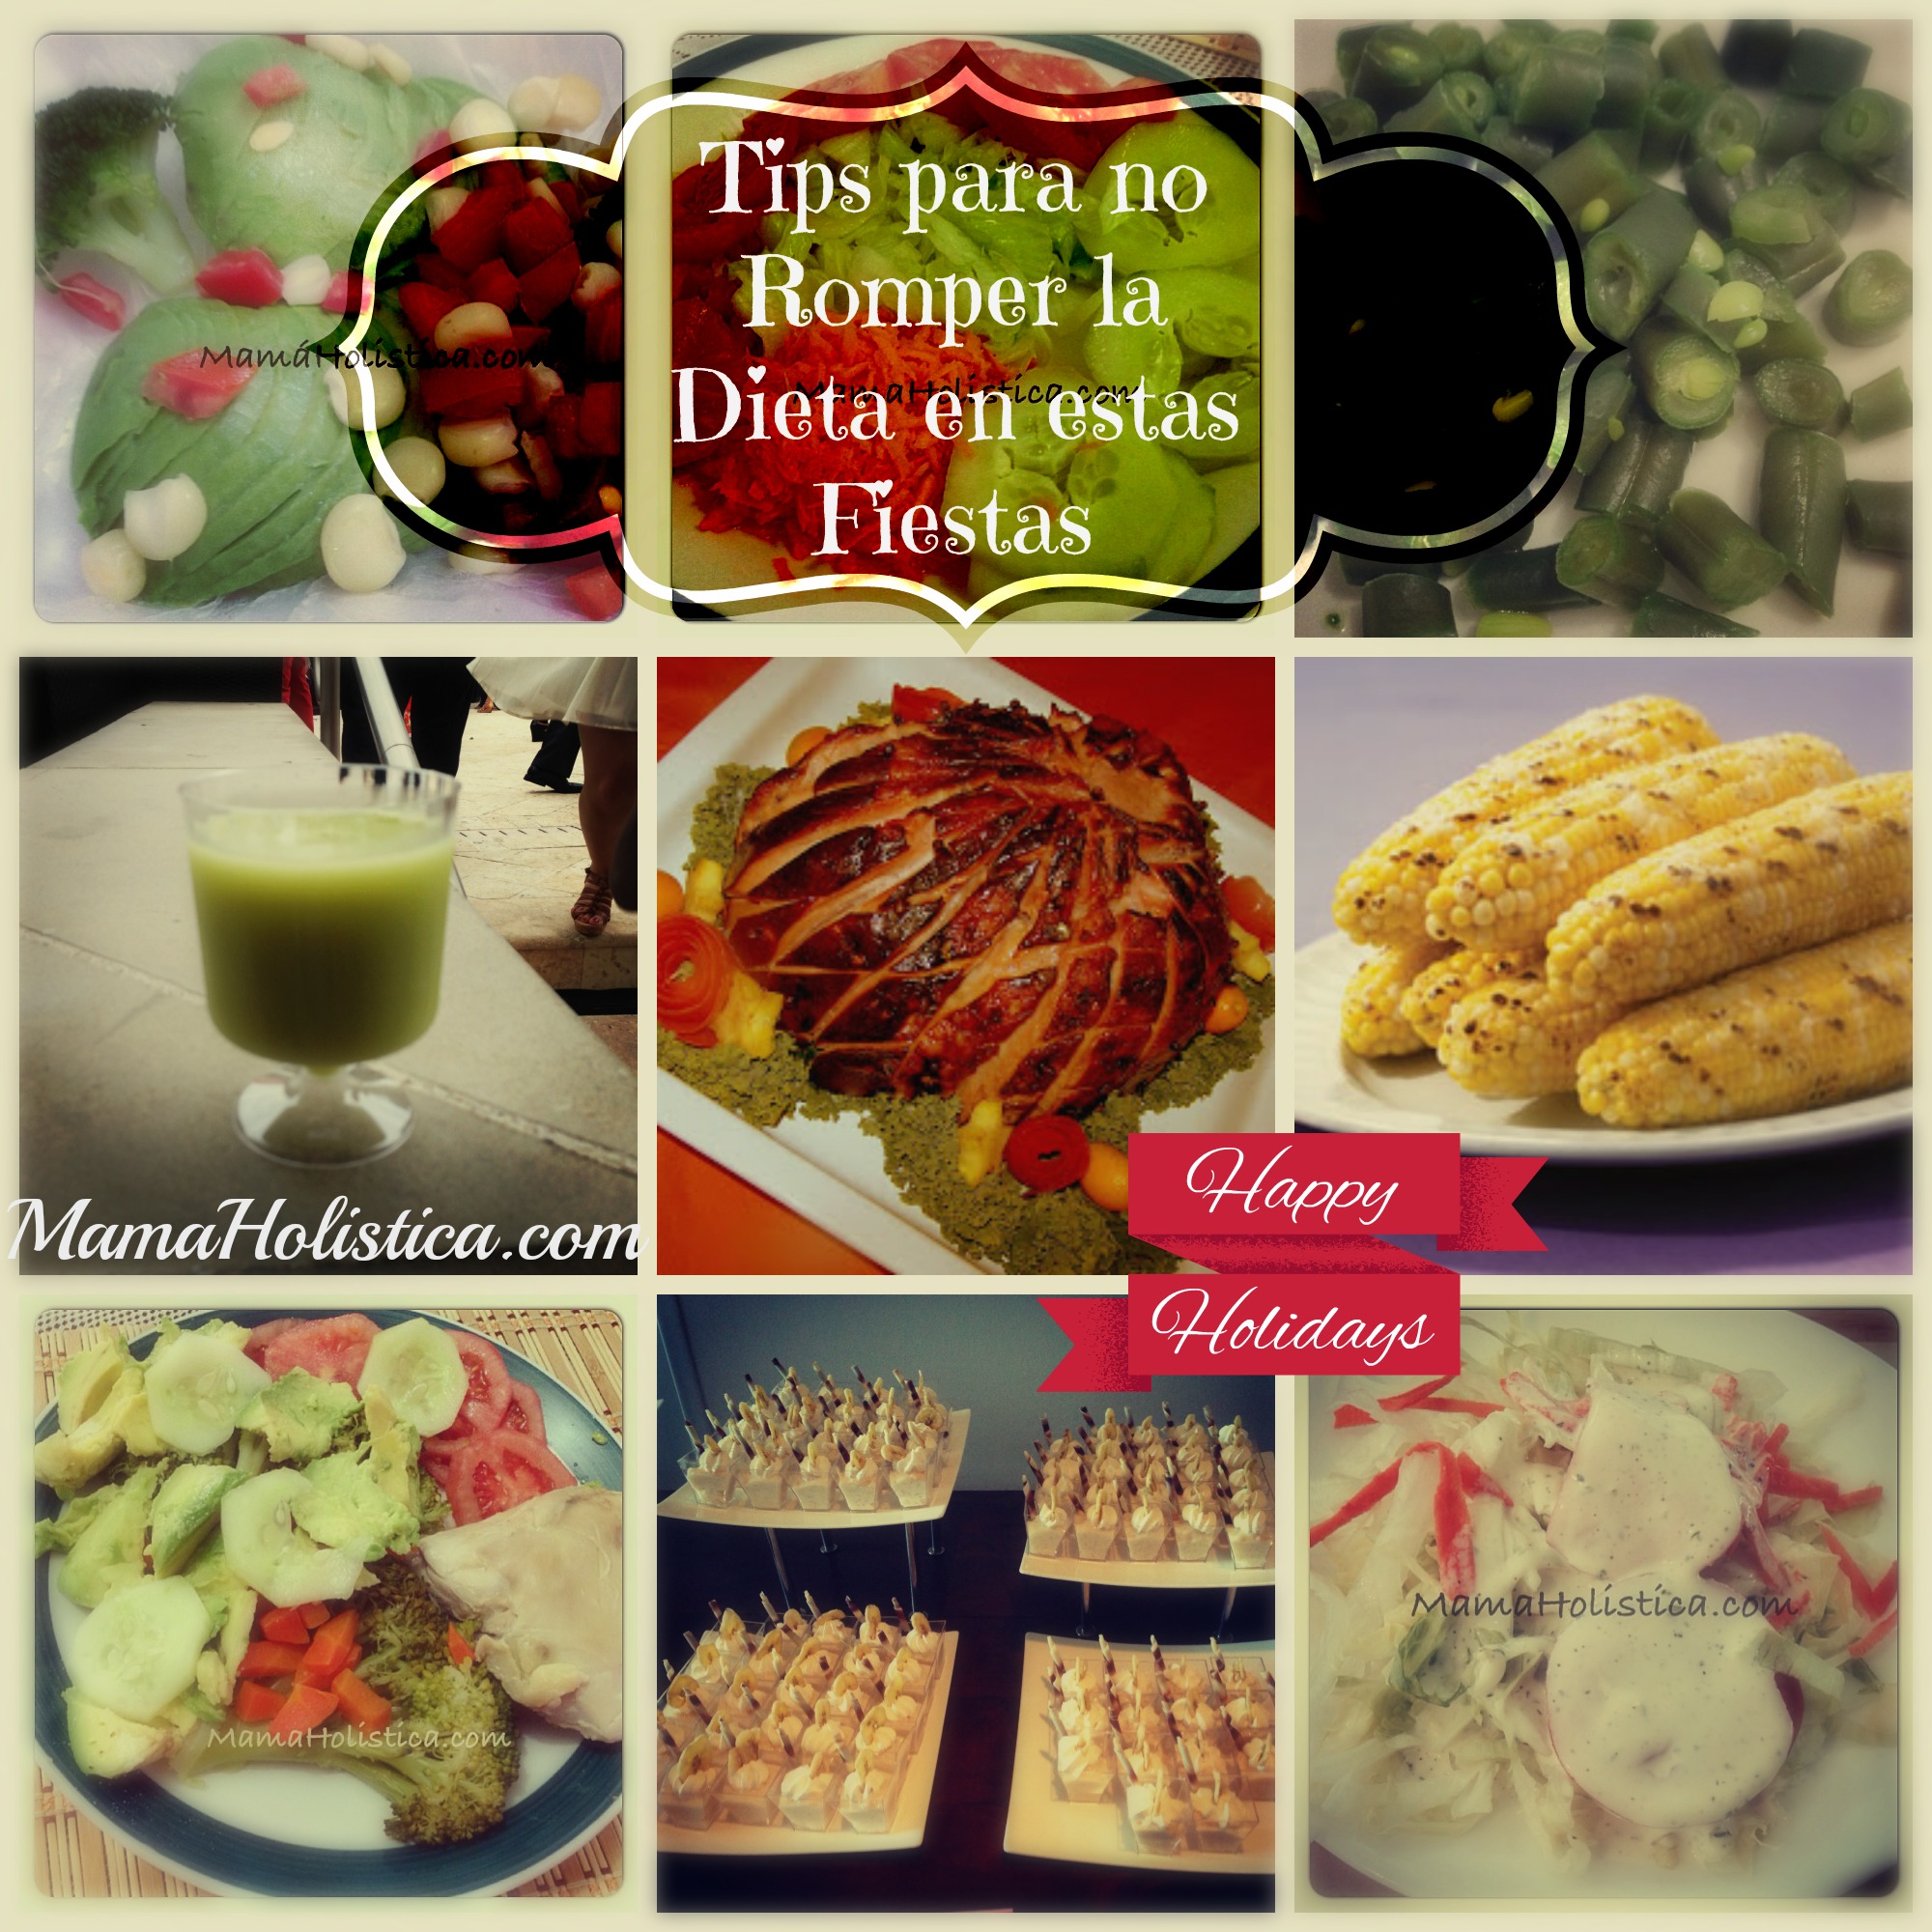 Tips para No Romper la Dieta en estas Fiestas #MamisHolisticas #Holidays